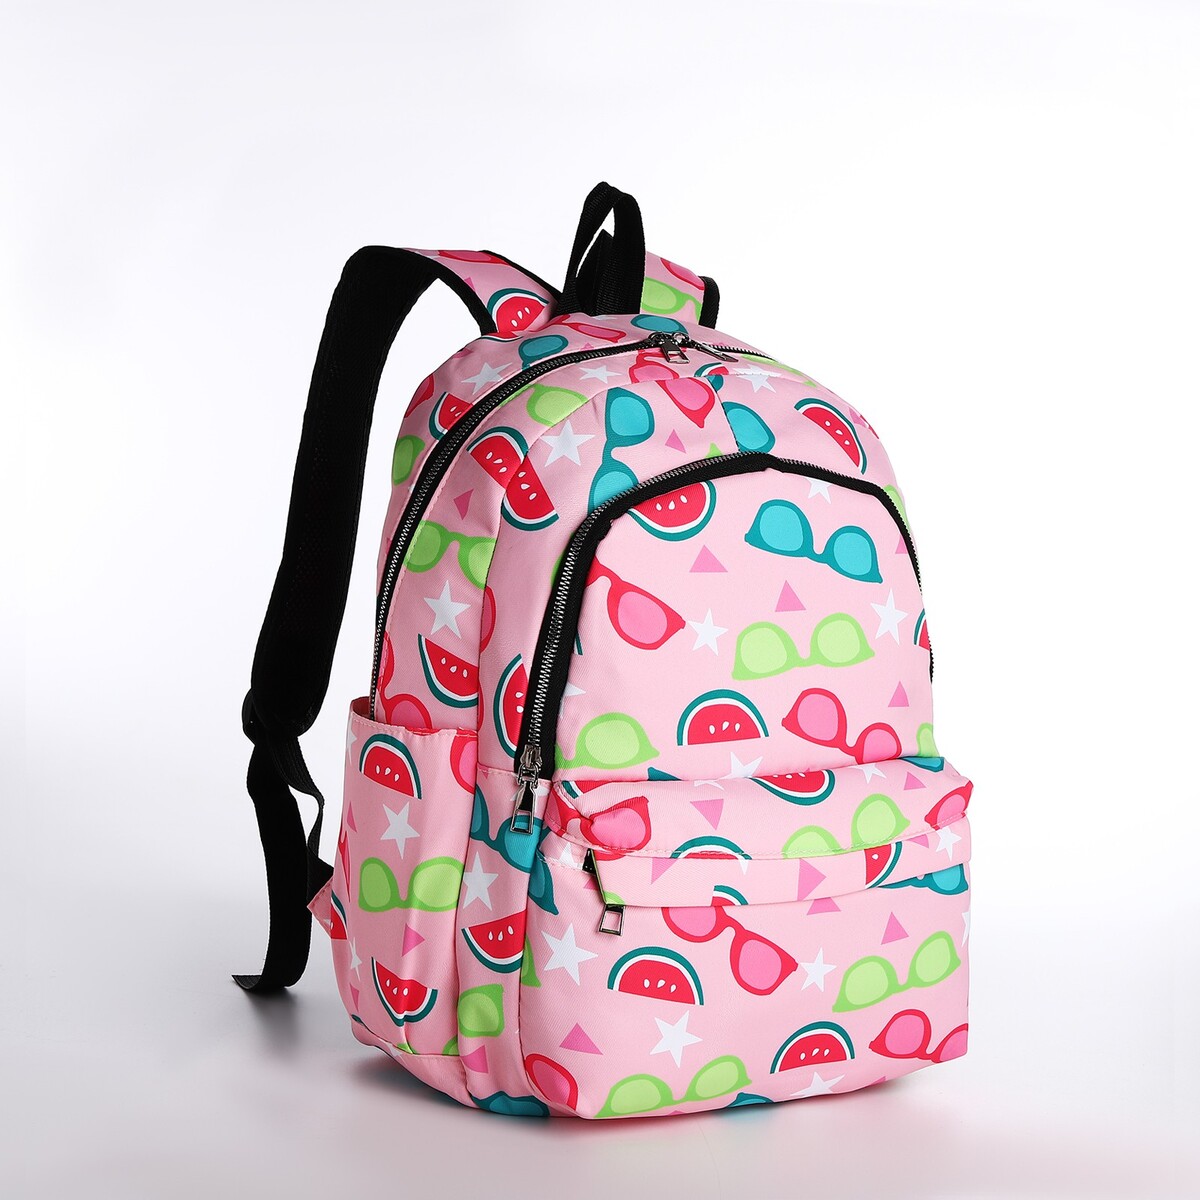 Рюкзак молодежный из текстиля 2 отдела на молнии, 3 кармана, цвет розовый рюкзак молодежный из текстиля 4 кармана белый розовый